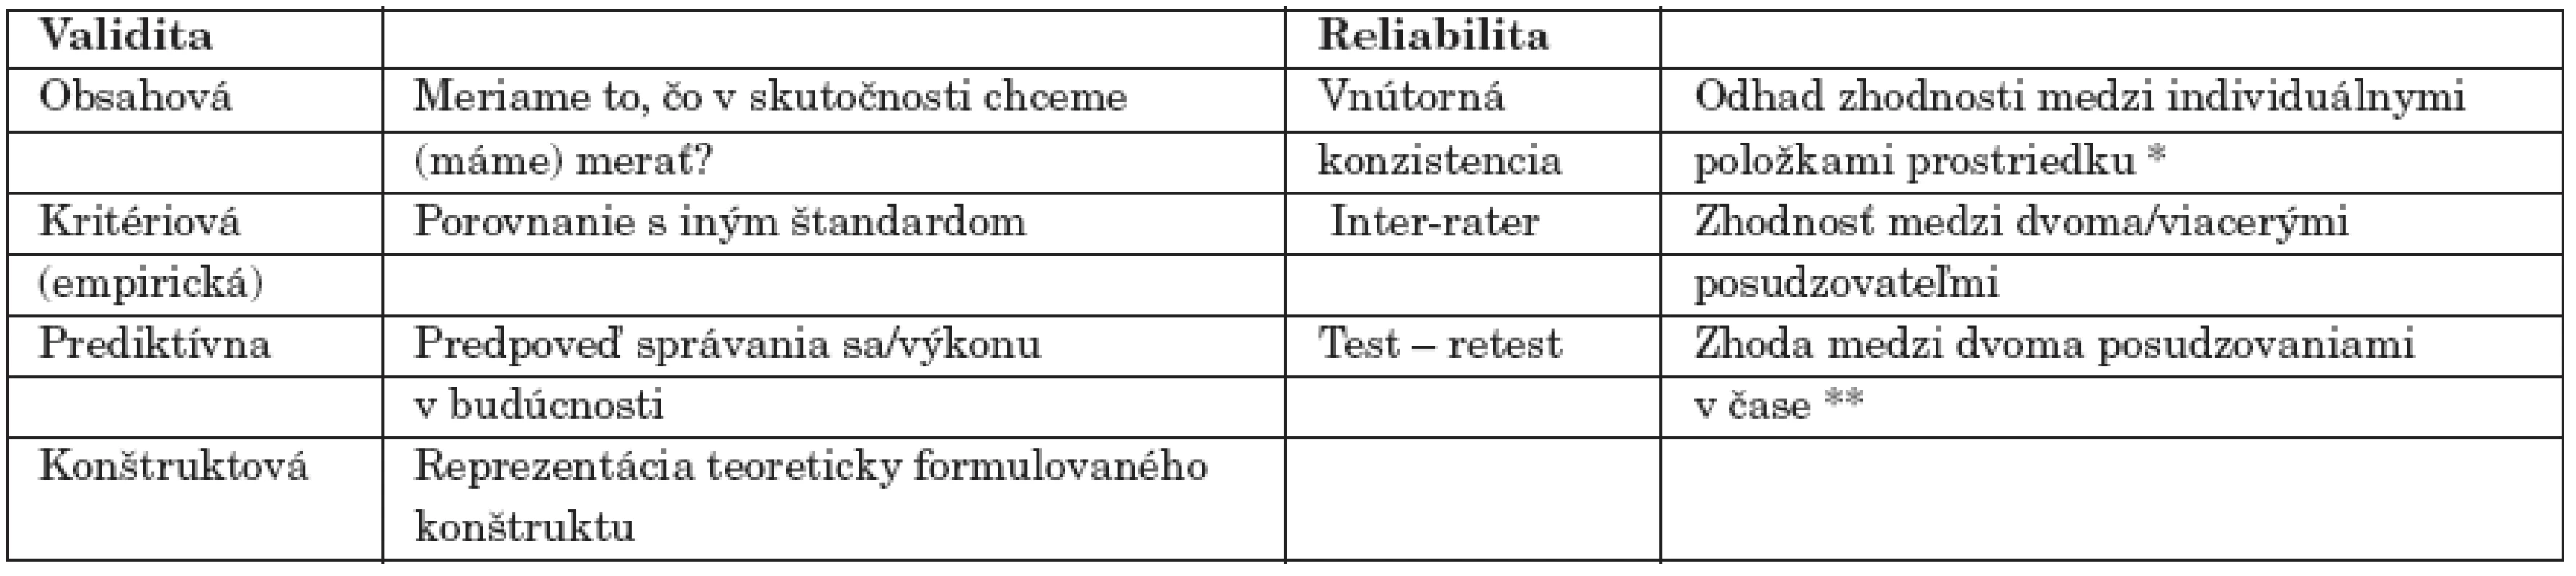 Validita a reliabilita posudzovacích prostriedkov - základné pojmy (podľa Stančák, 1996, Ferjenčík 2000, Blacker a Endiccot, 2000).